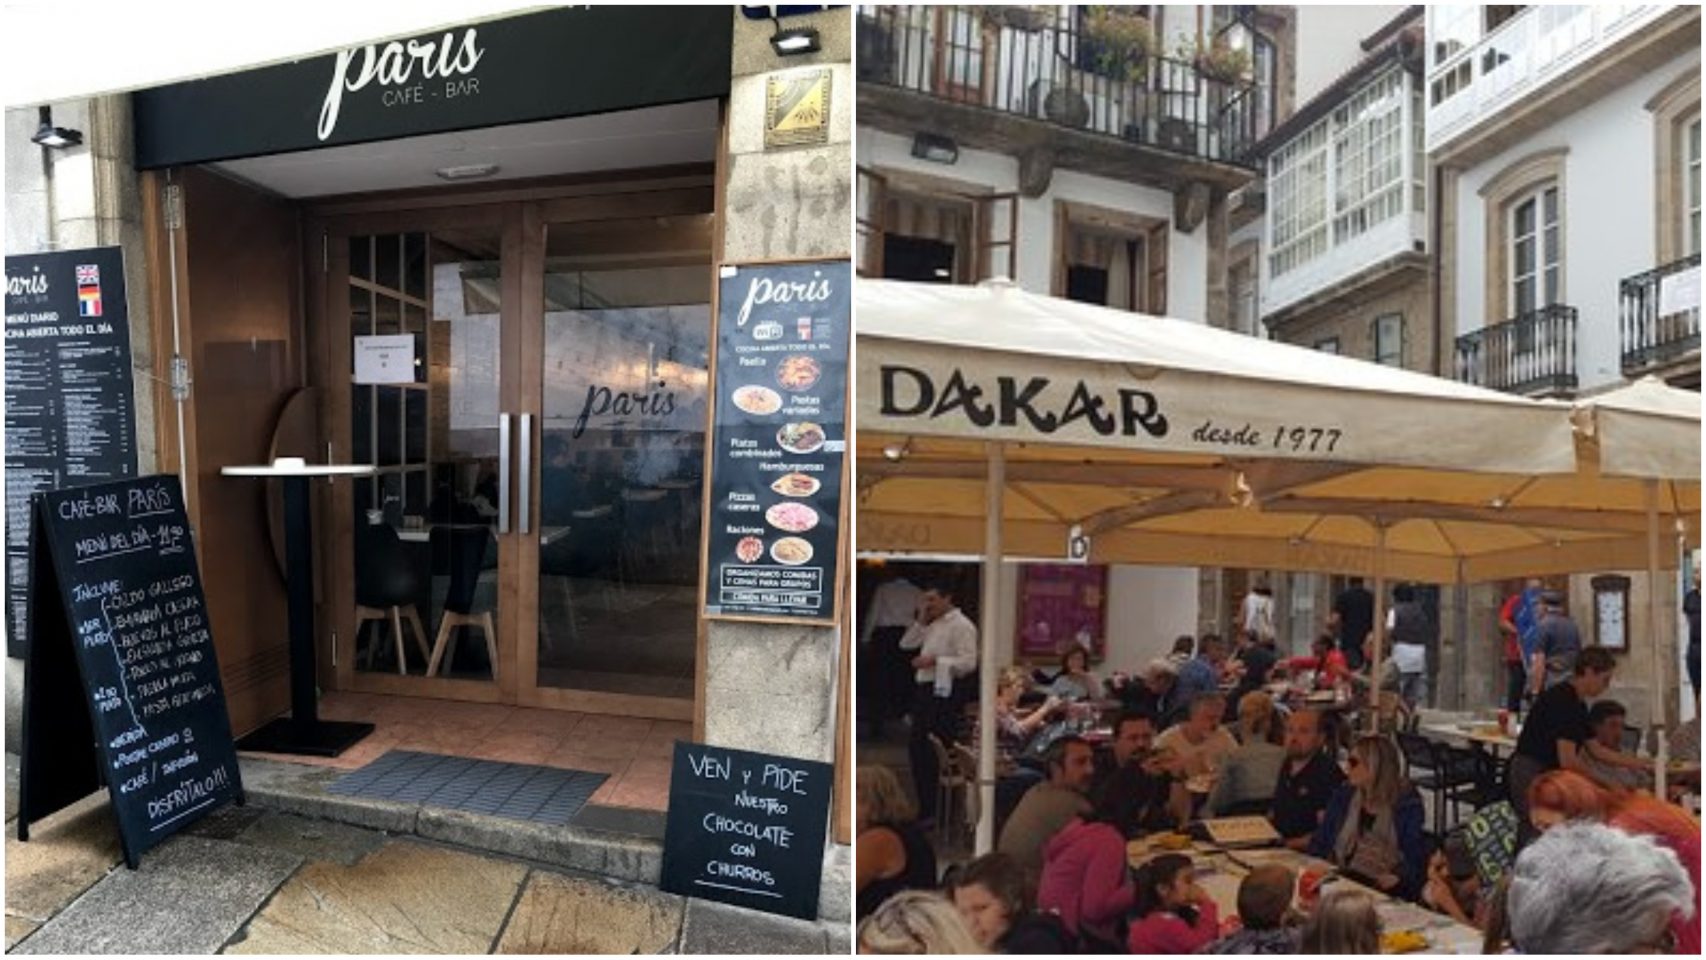 Los bares París y Dakar, origen y destino de la famosa ruta.